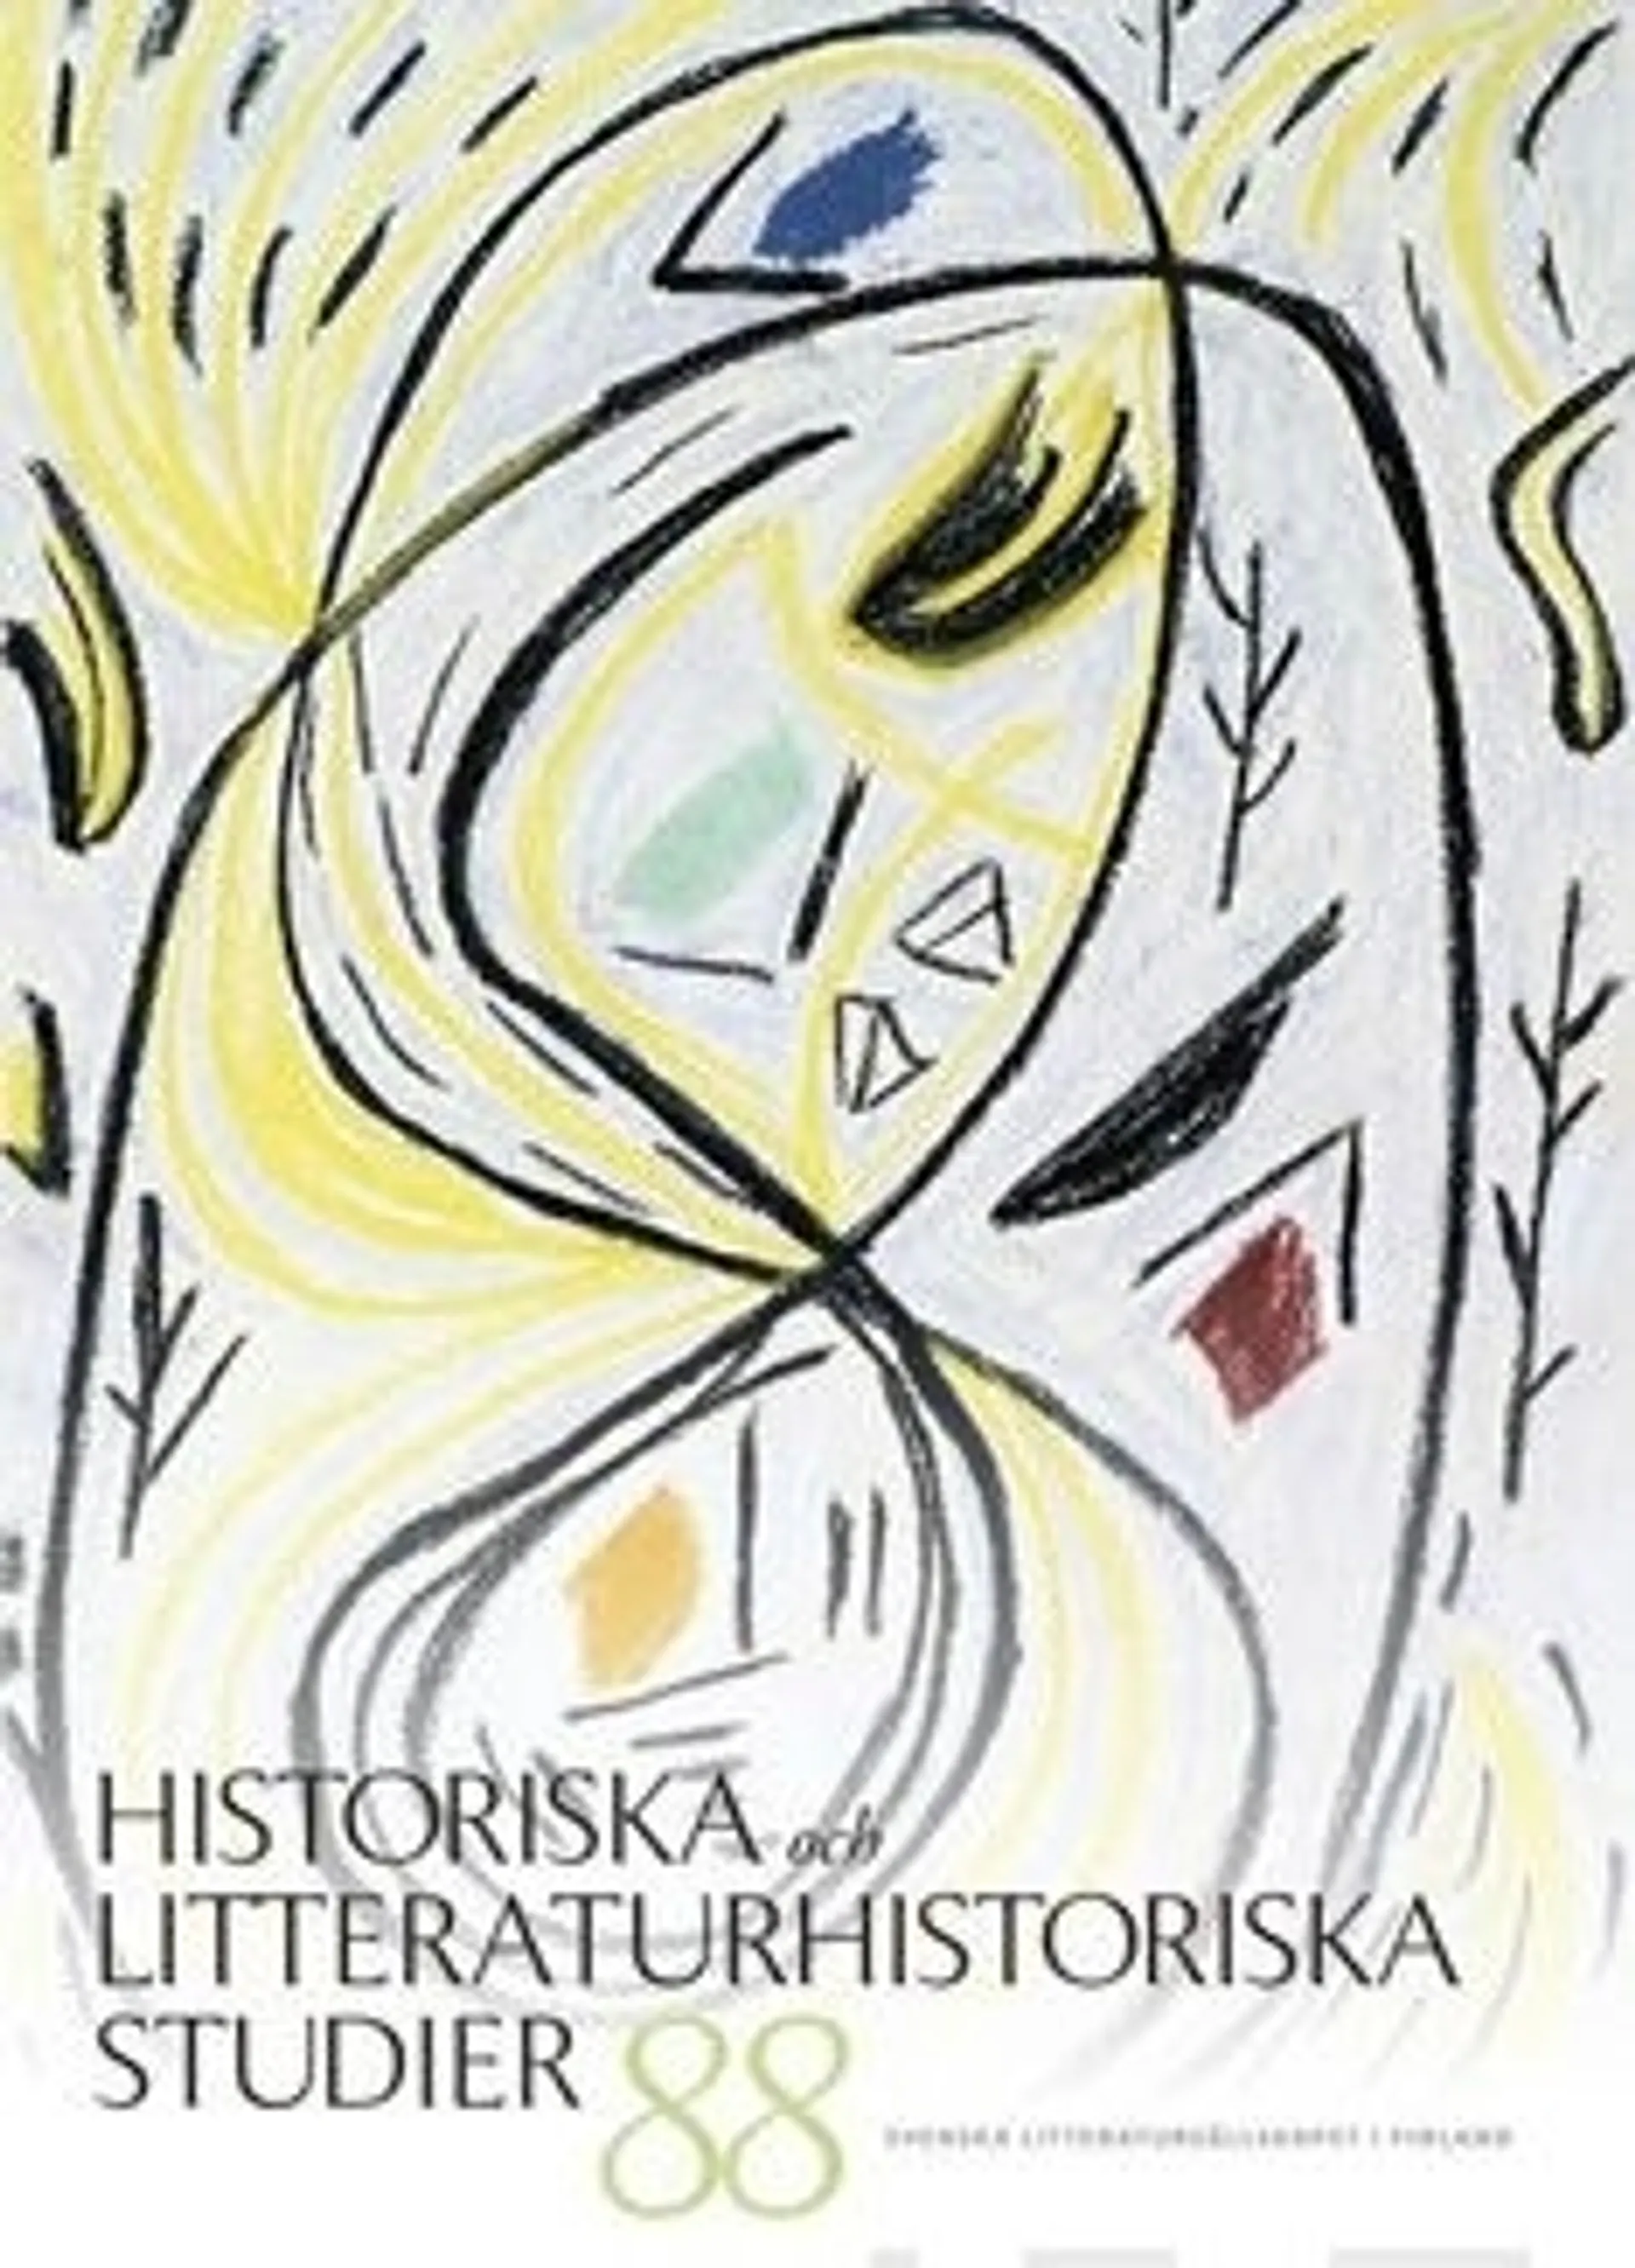 Historiska och litteraturhistoriska studier 88